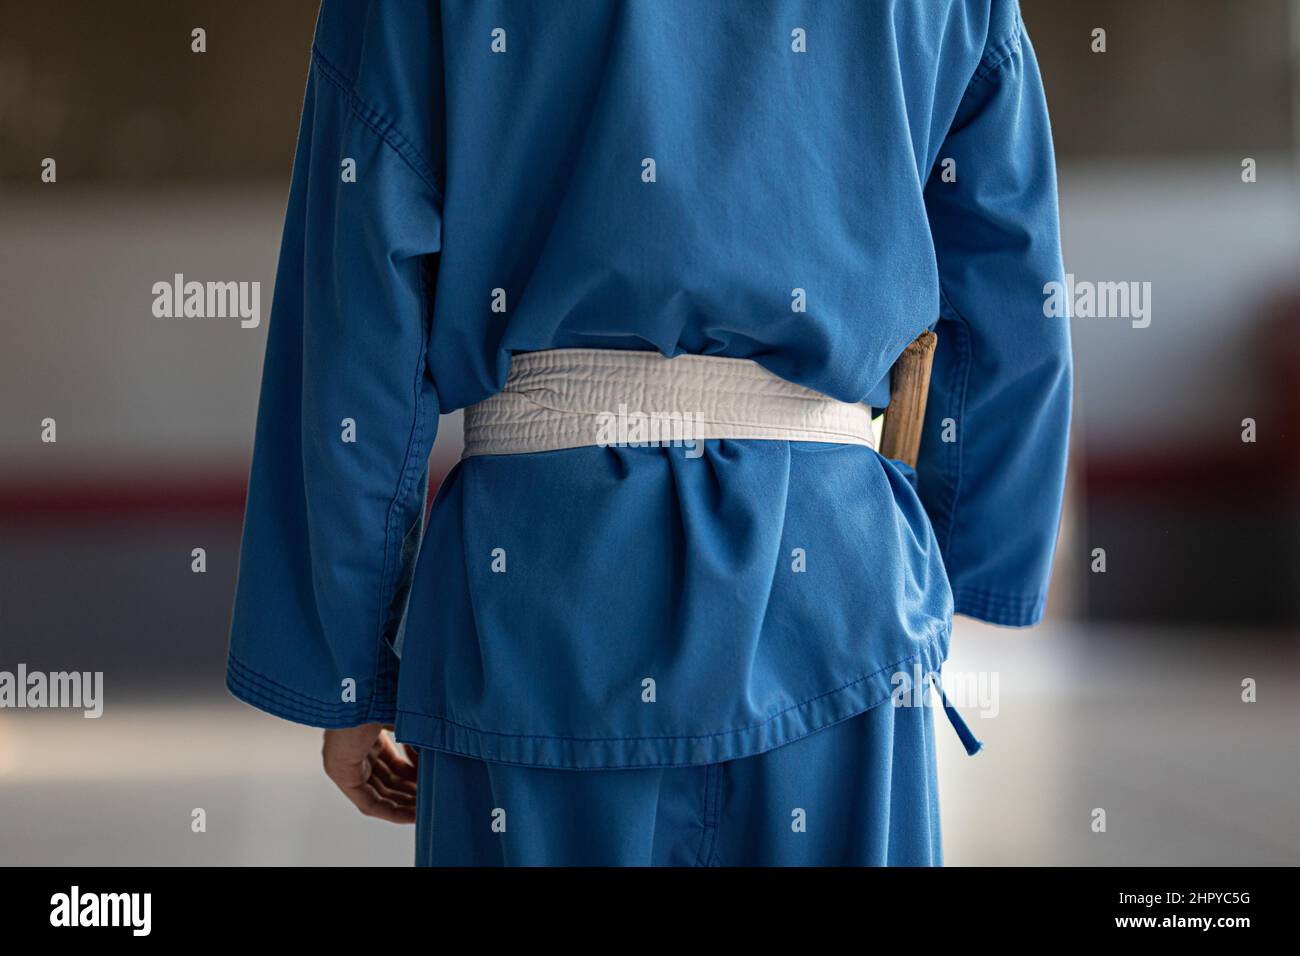 Personne en uniforme de judo bleu avec une ceinture d'art martial blanche  Photo Stock - Alamy